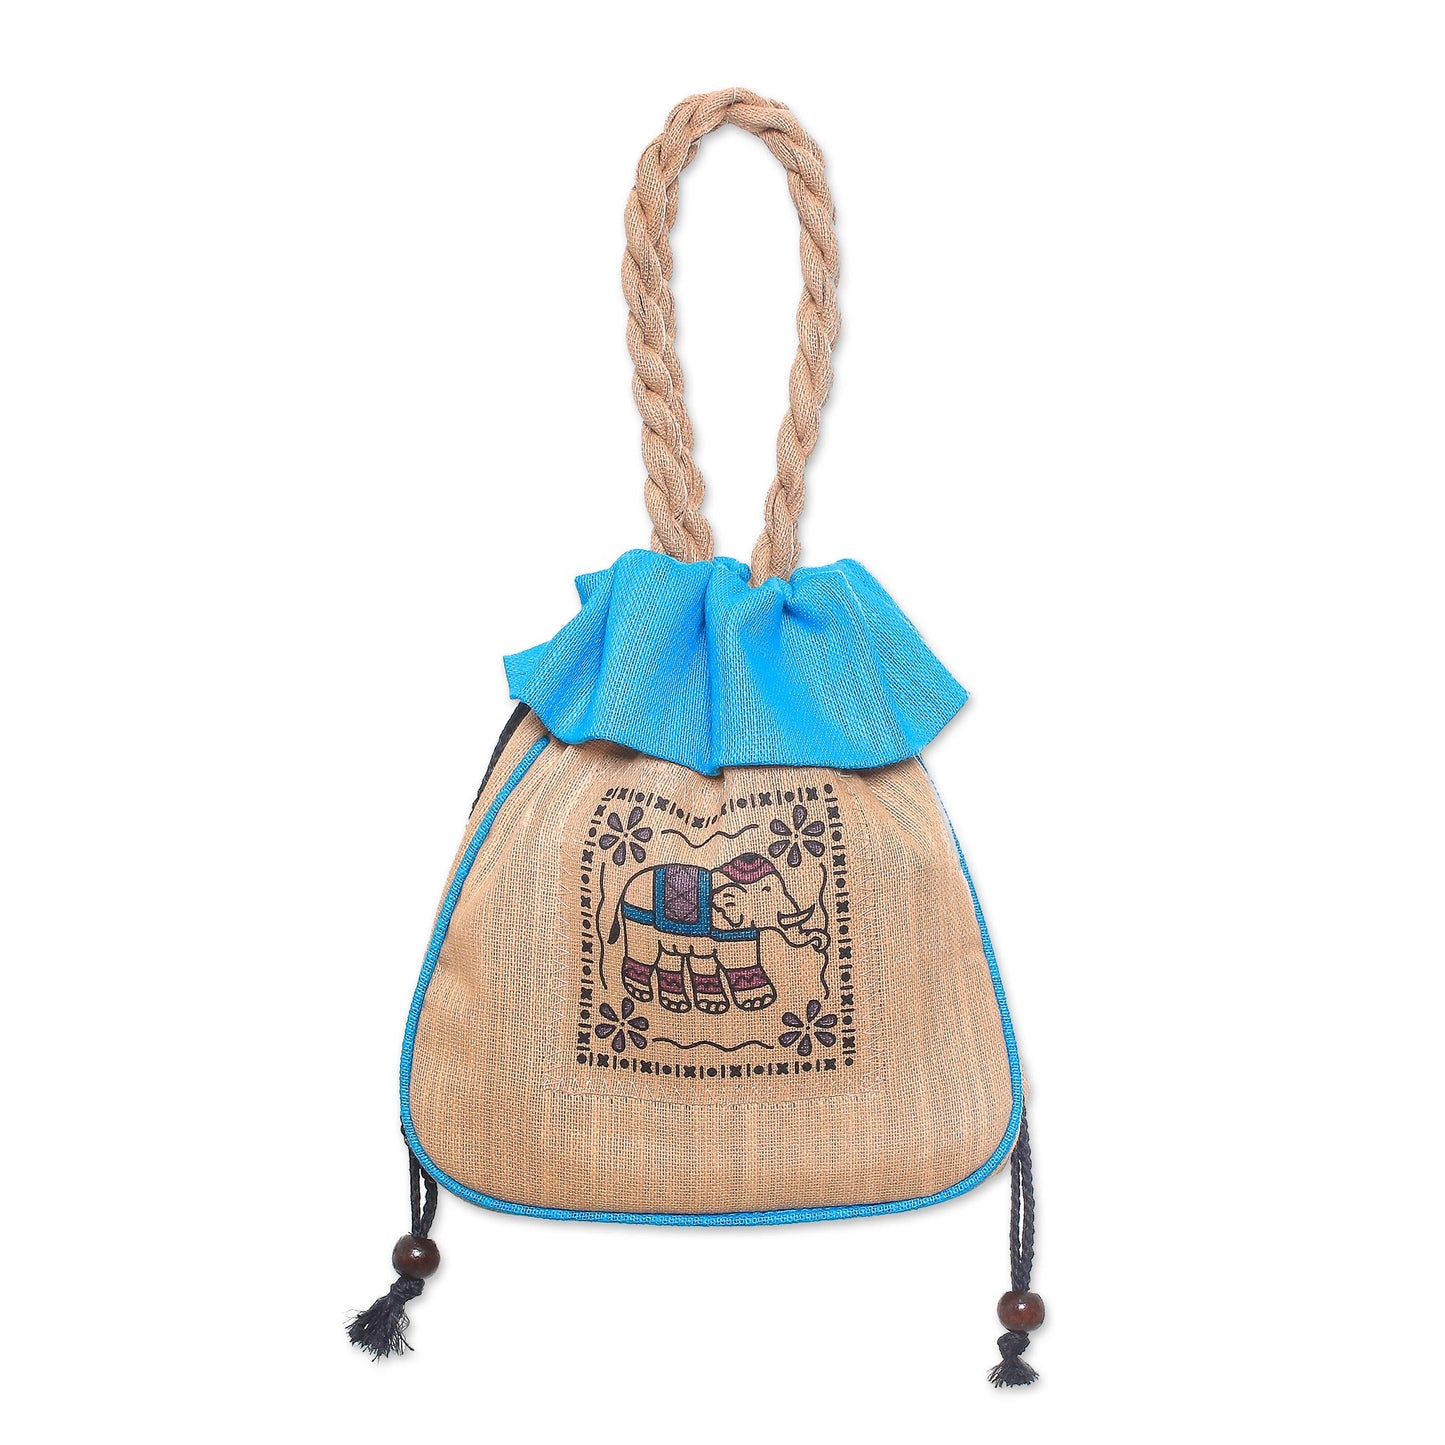 Elephant Caper in Blue 100% Cotton Tan and Blue Elephant Motif Cinch-Top Handbag